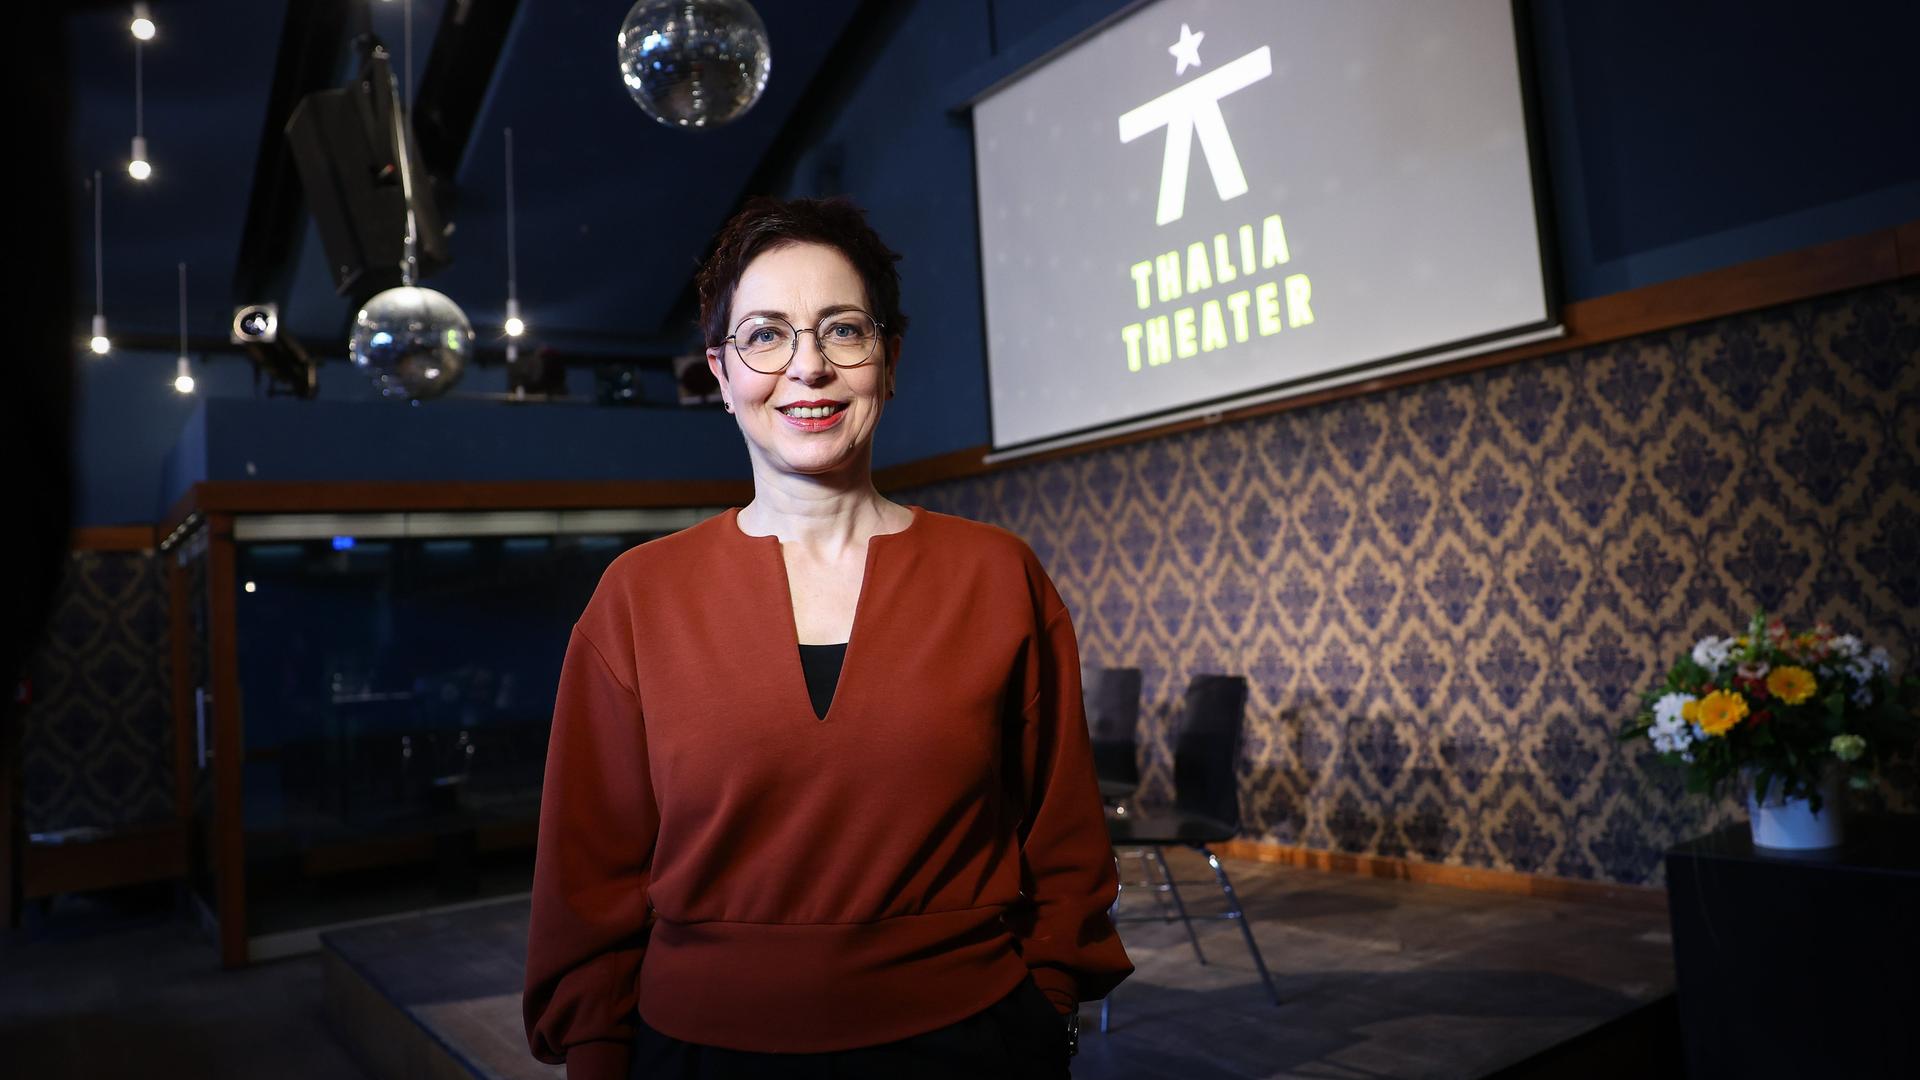 Sonja Anders lächelt nach einer Pressekonferenz im Thalia Theater.